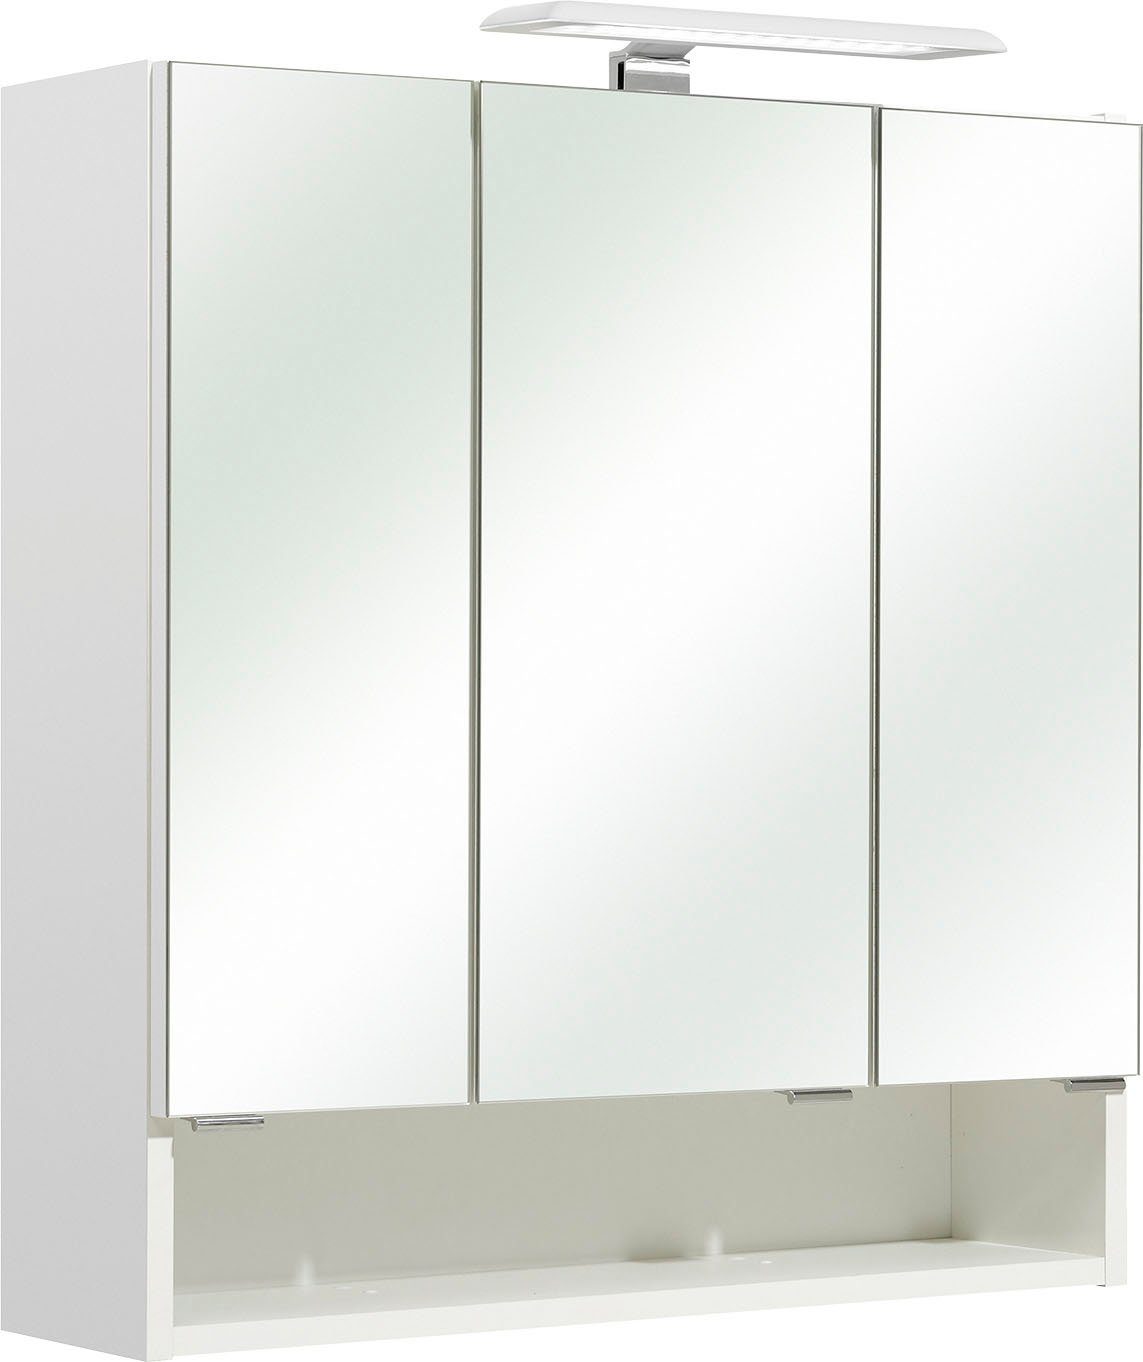 PELIPAL Spiegelkast Quickset 953 Breedte 65 cm, 3-deurs, ledverlichting, schakelaar/contactdoos, deurdemper, open bergruimte